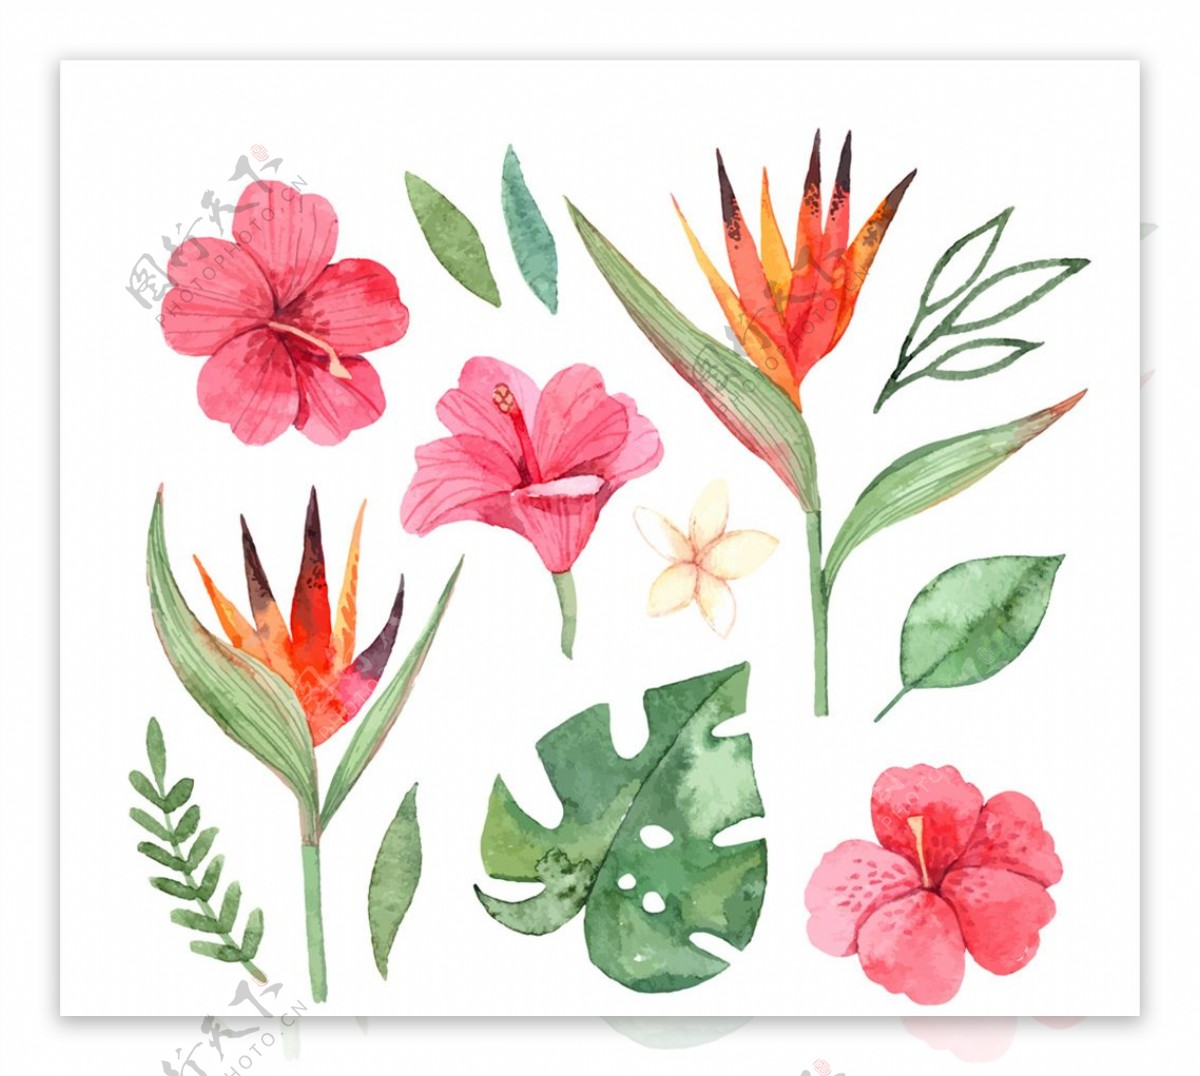 13款彩绘热带花卉和叶子